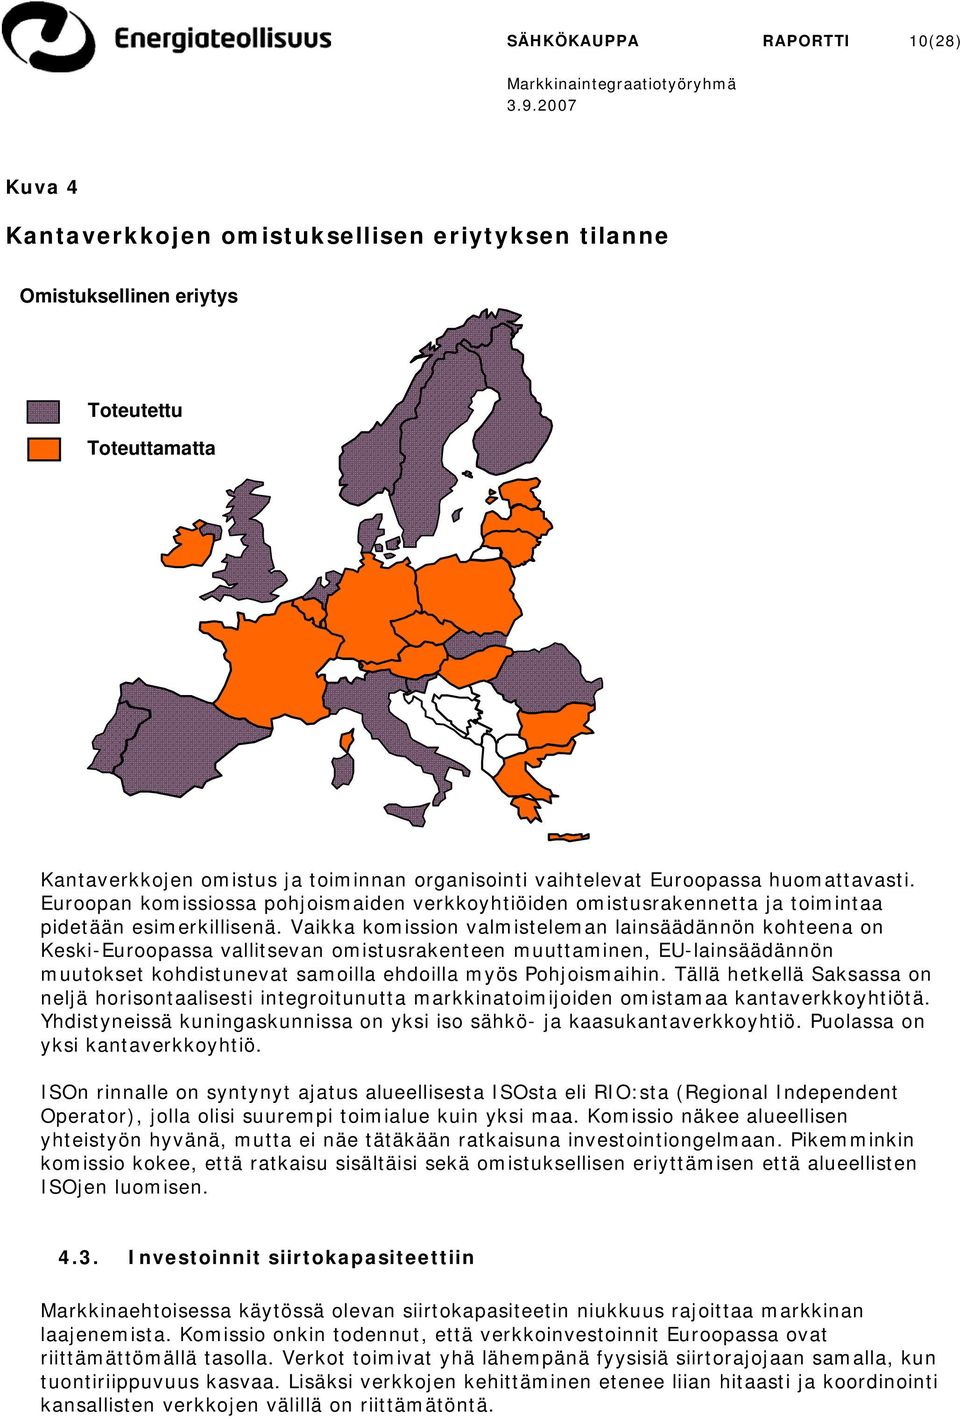 Vaikka komission valmisteleman lainsäädännön kohteena on Keski-Euroopassa vallitsevan omistusrakenteen muuttaminen, EU-lainsäädännön muutokset kohdistunevat samoilla ehdoilla myös Pohjoismaihin.